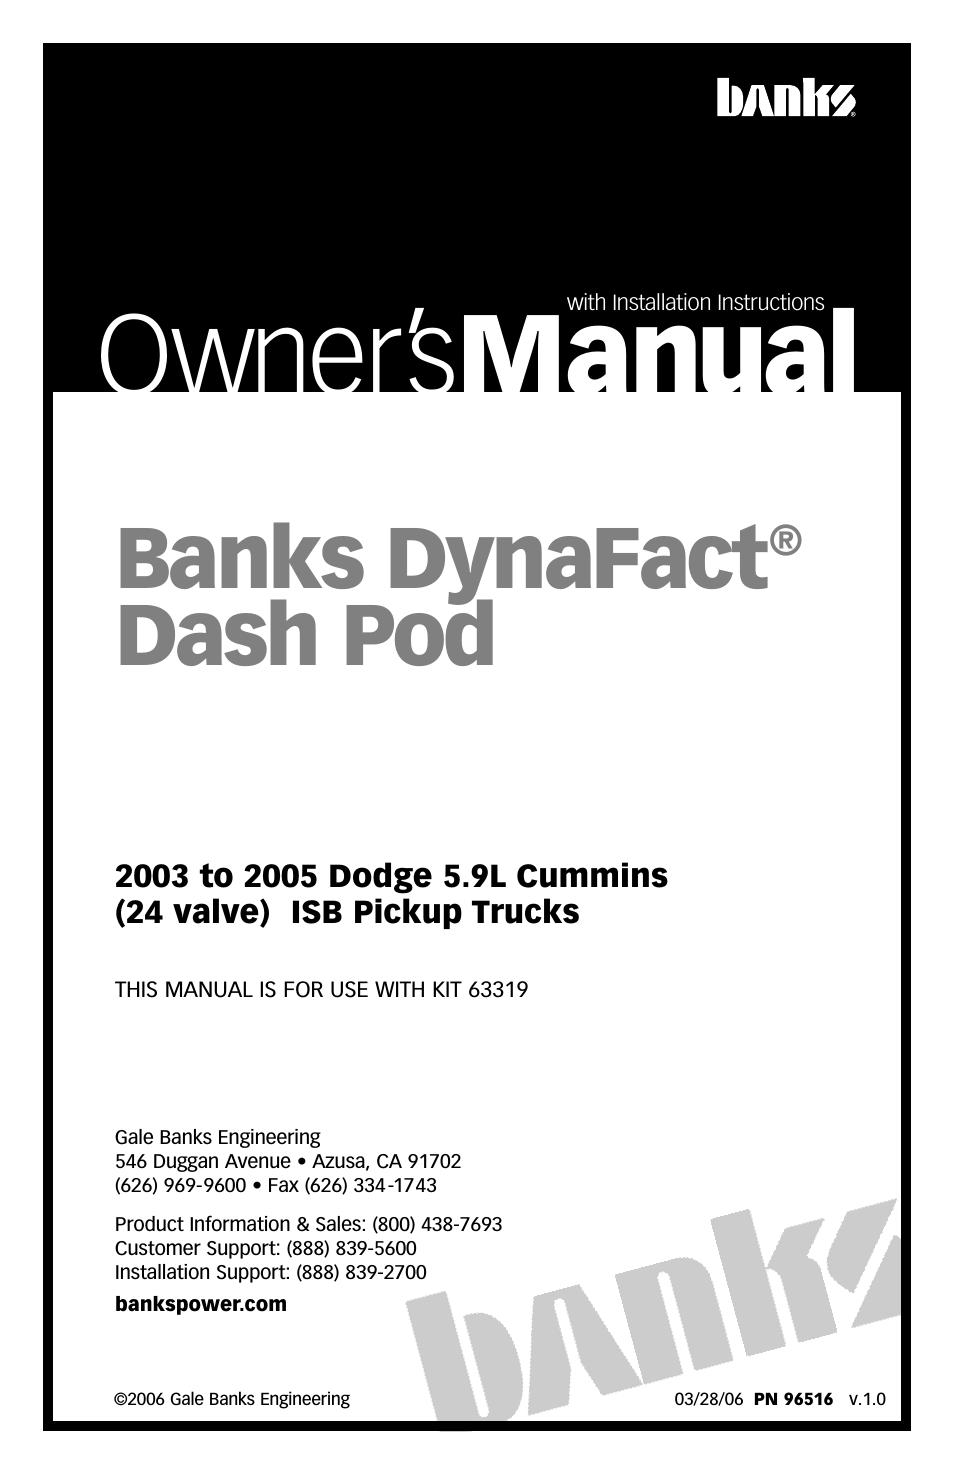 DynaFact Dash Pod '03-05 Dodge 5.9L Cummins Truck